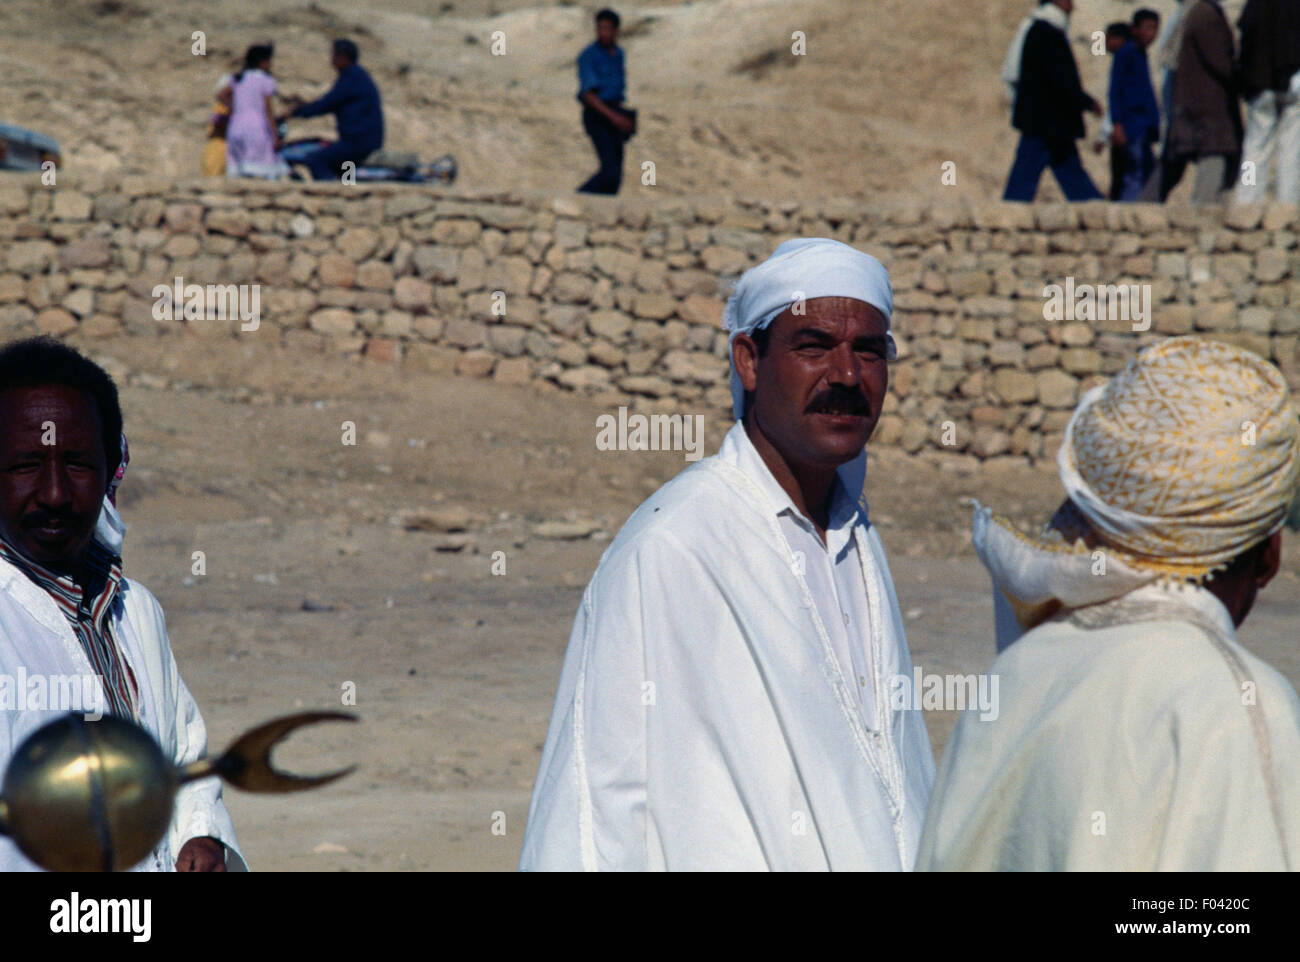 Man in traditional clothes, Matmata Berber festival, Tunisia. Stock Photo